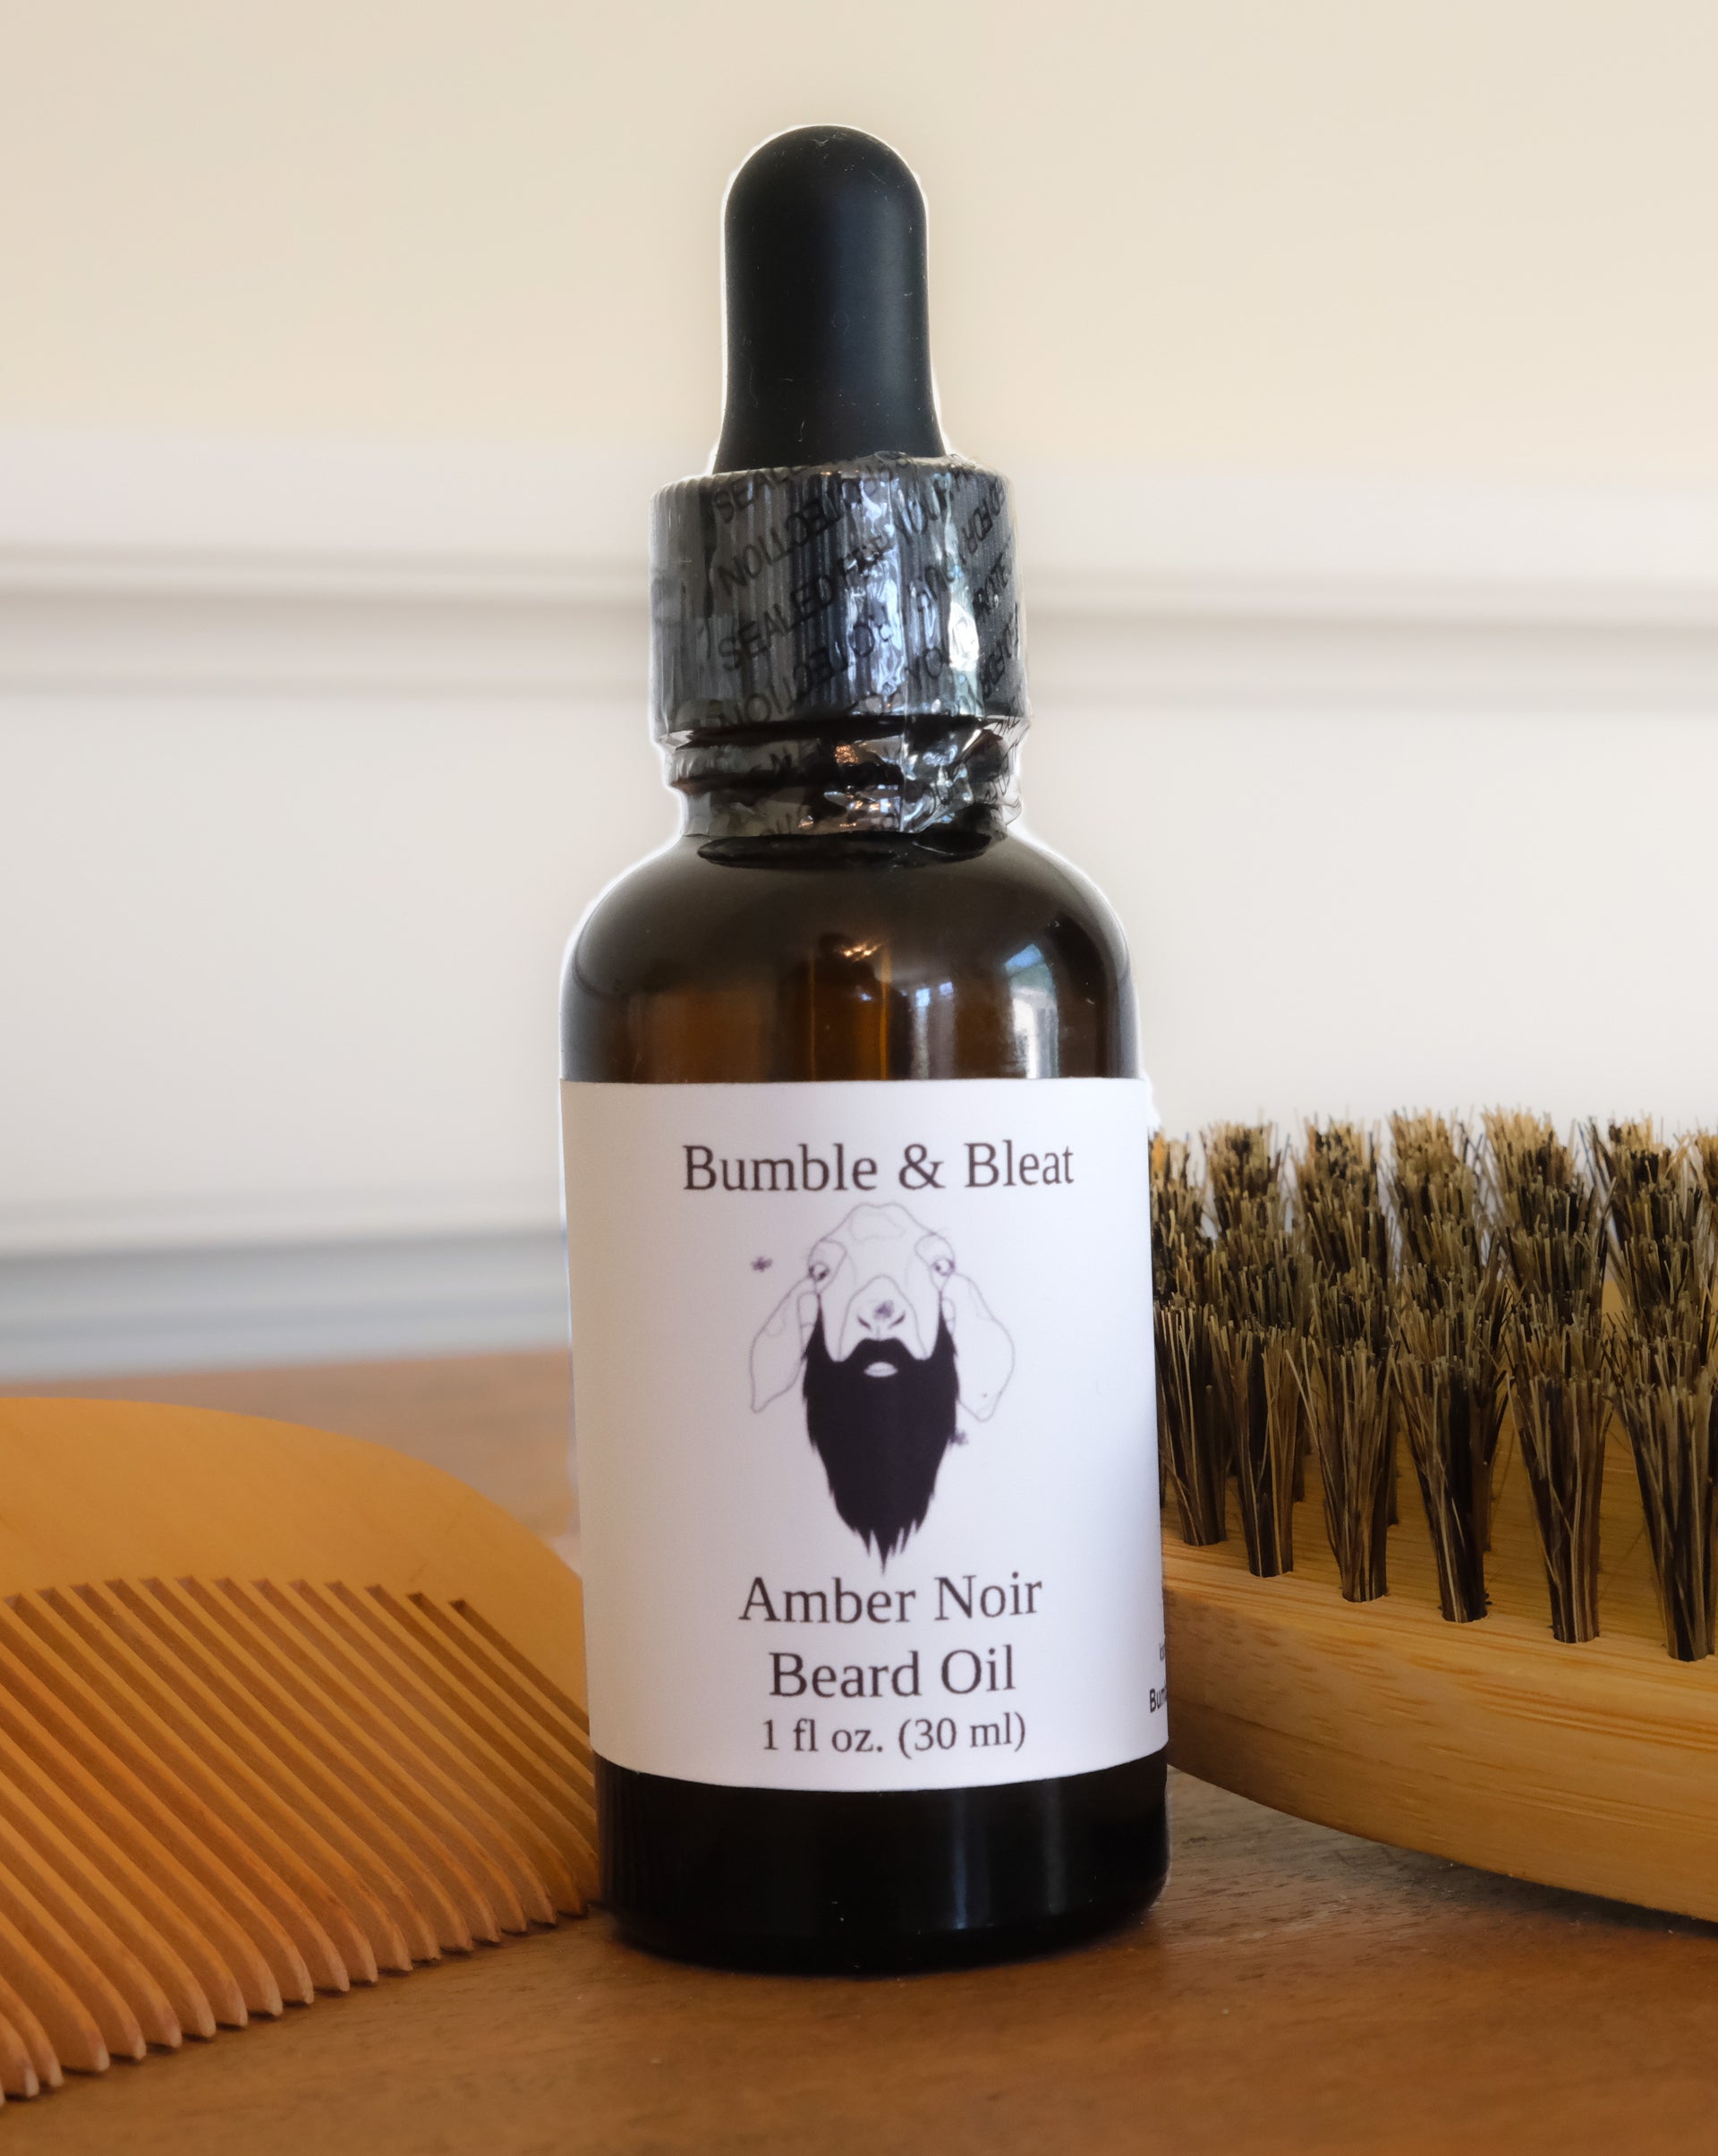 Amber Noir Beard Oil